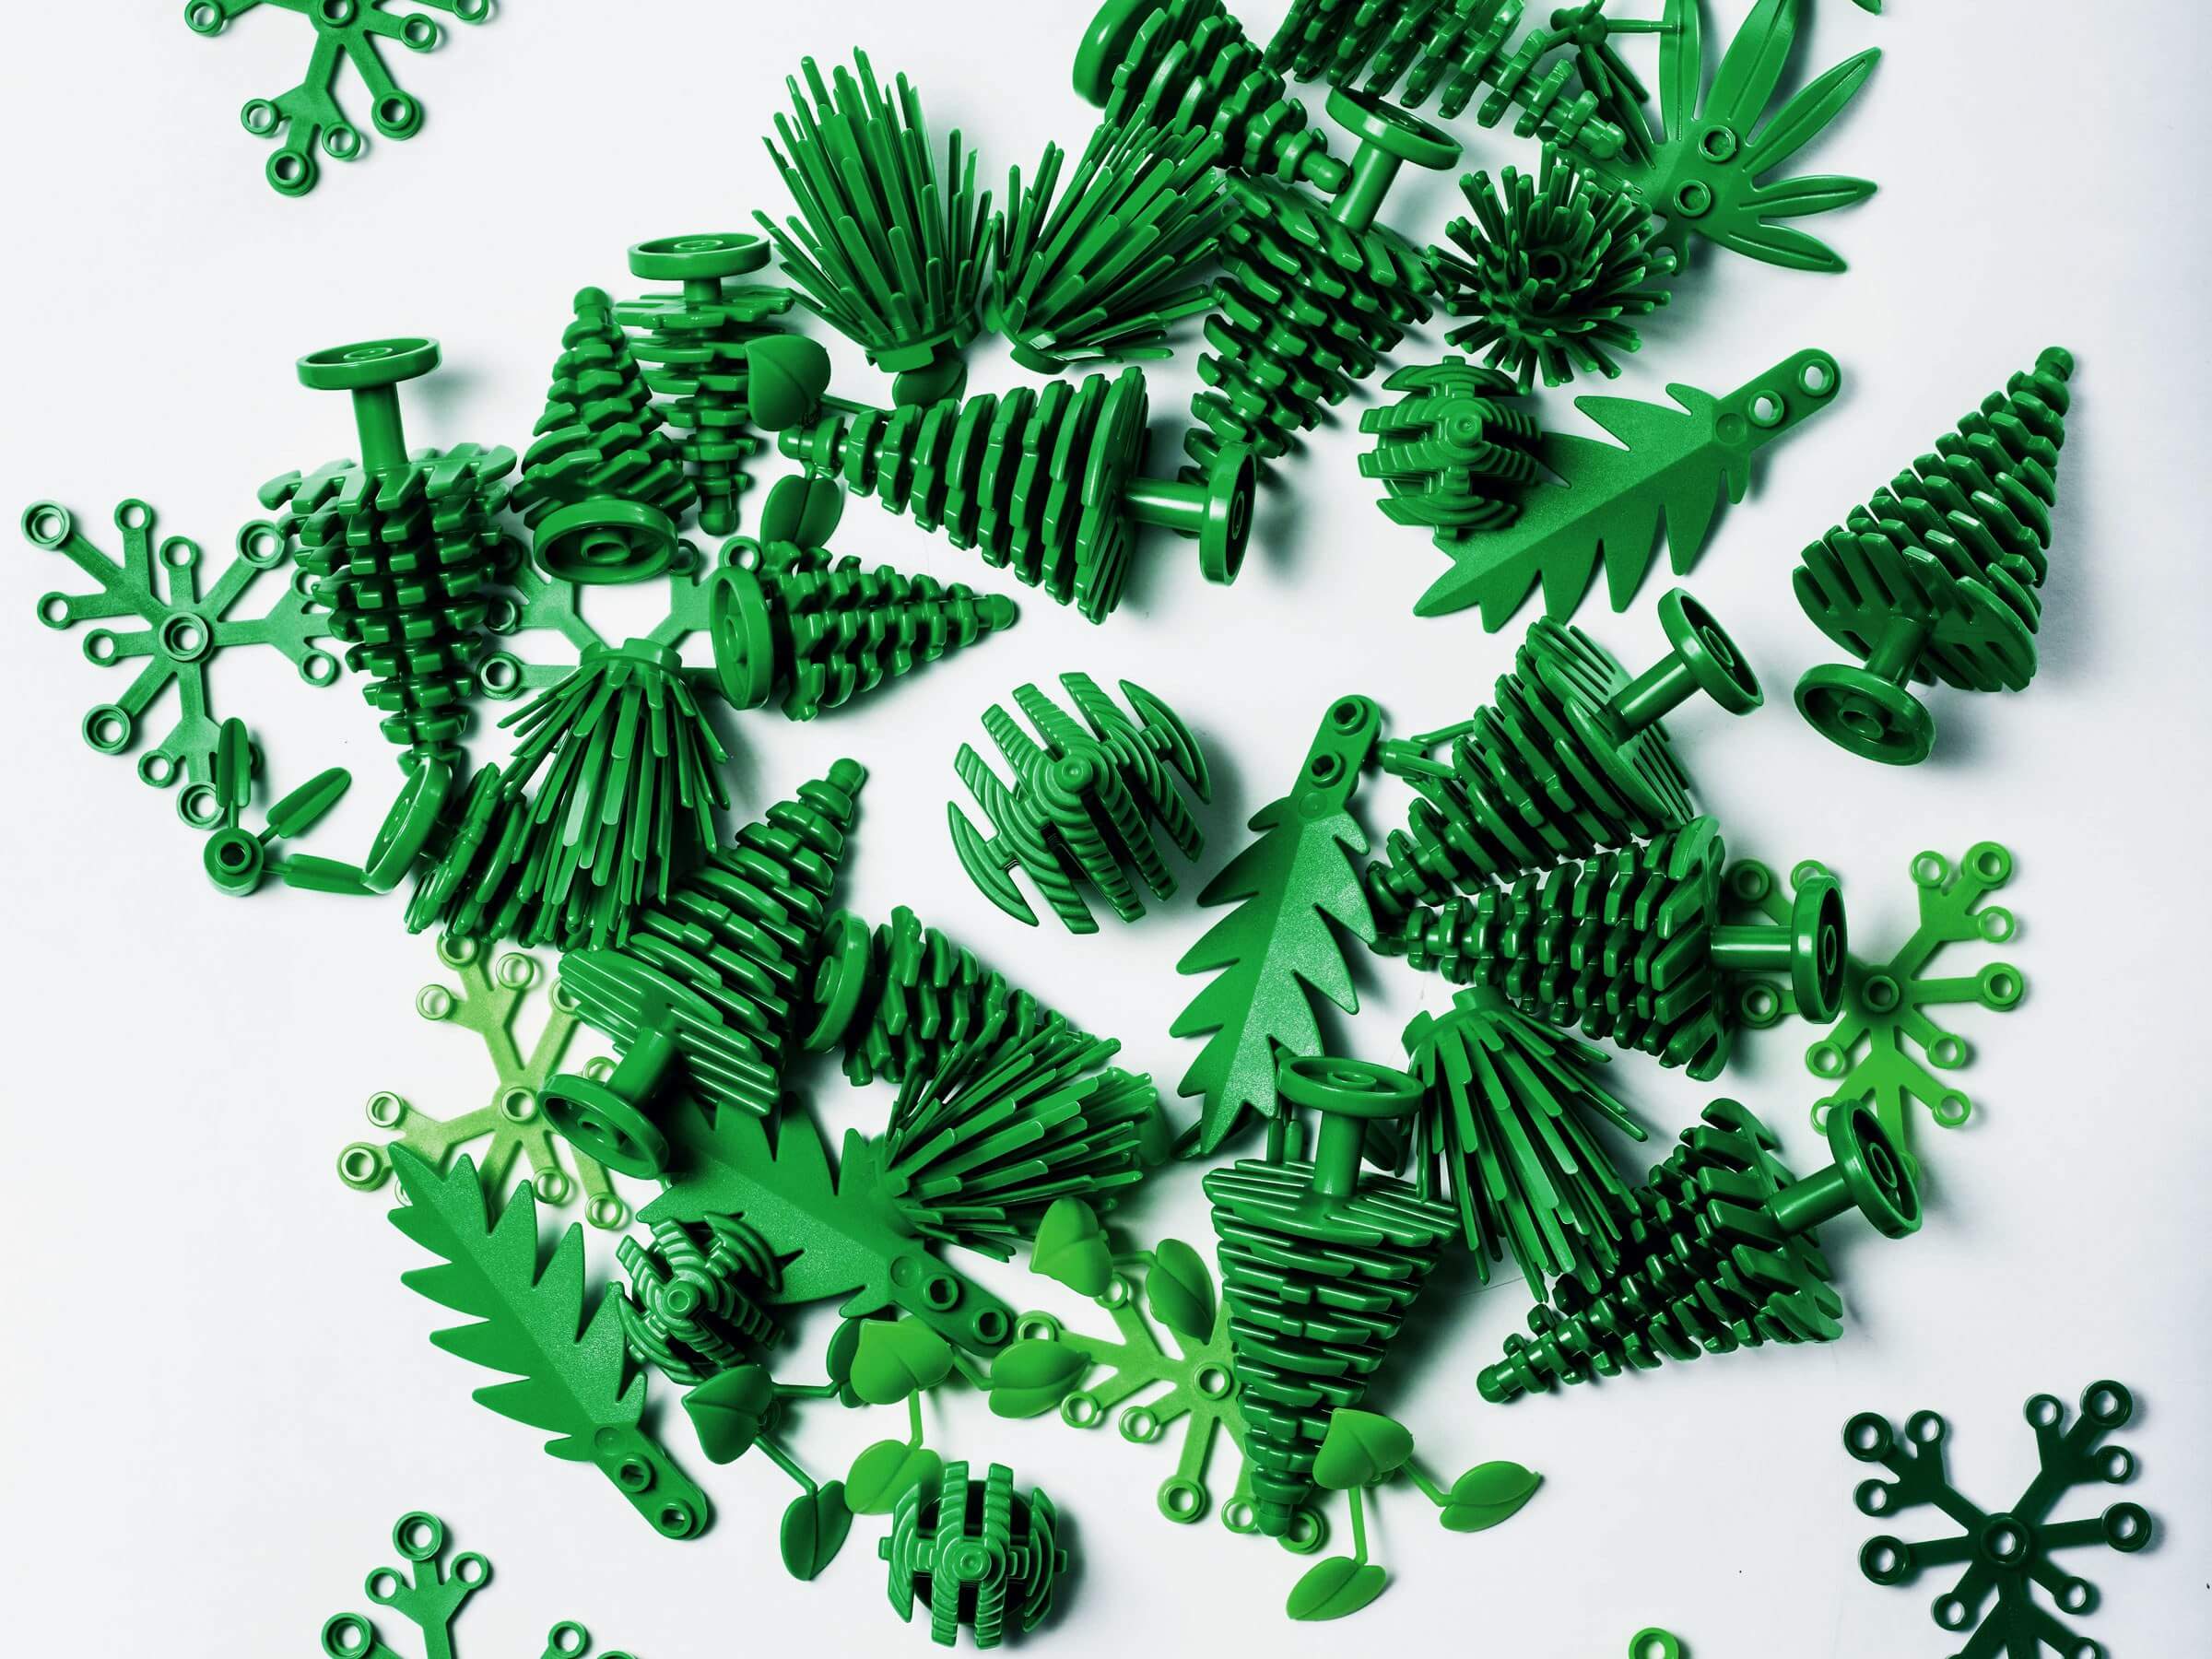 LEGO comenzará a vender bloques sustentables hechos a base de plantas